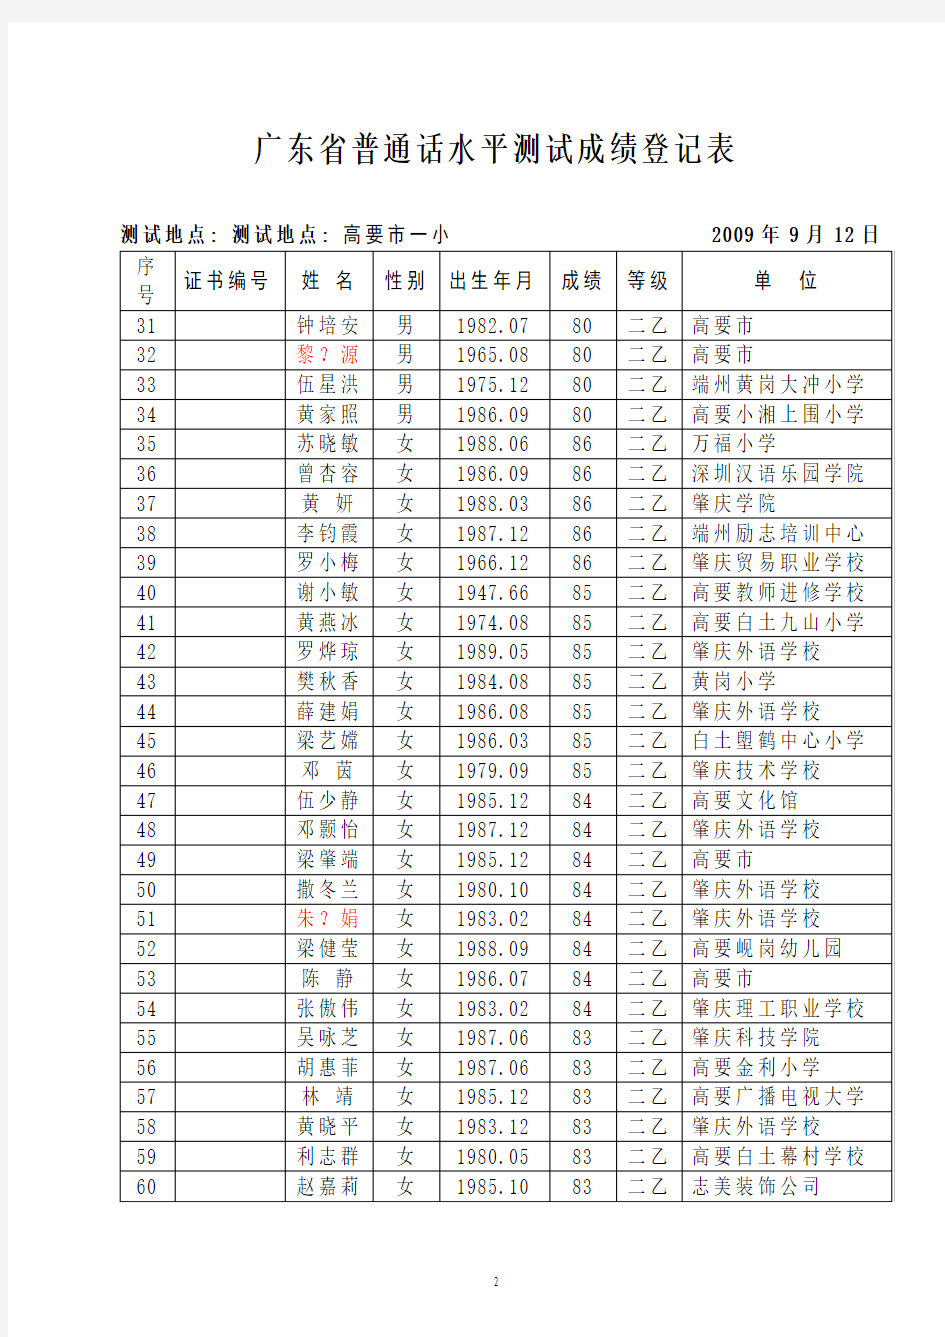 广东省普通话水平测试成绩登记表